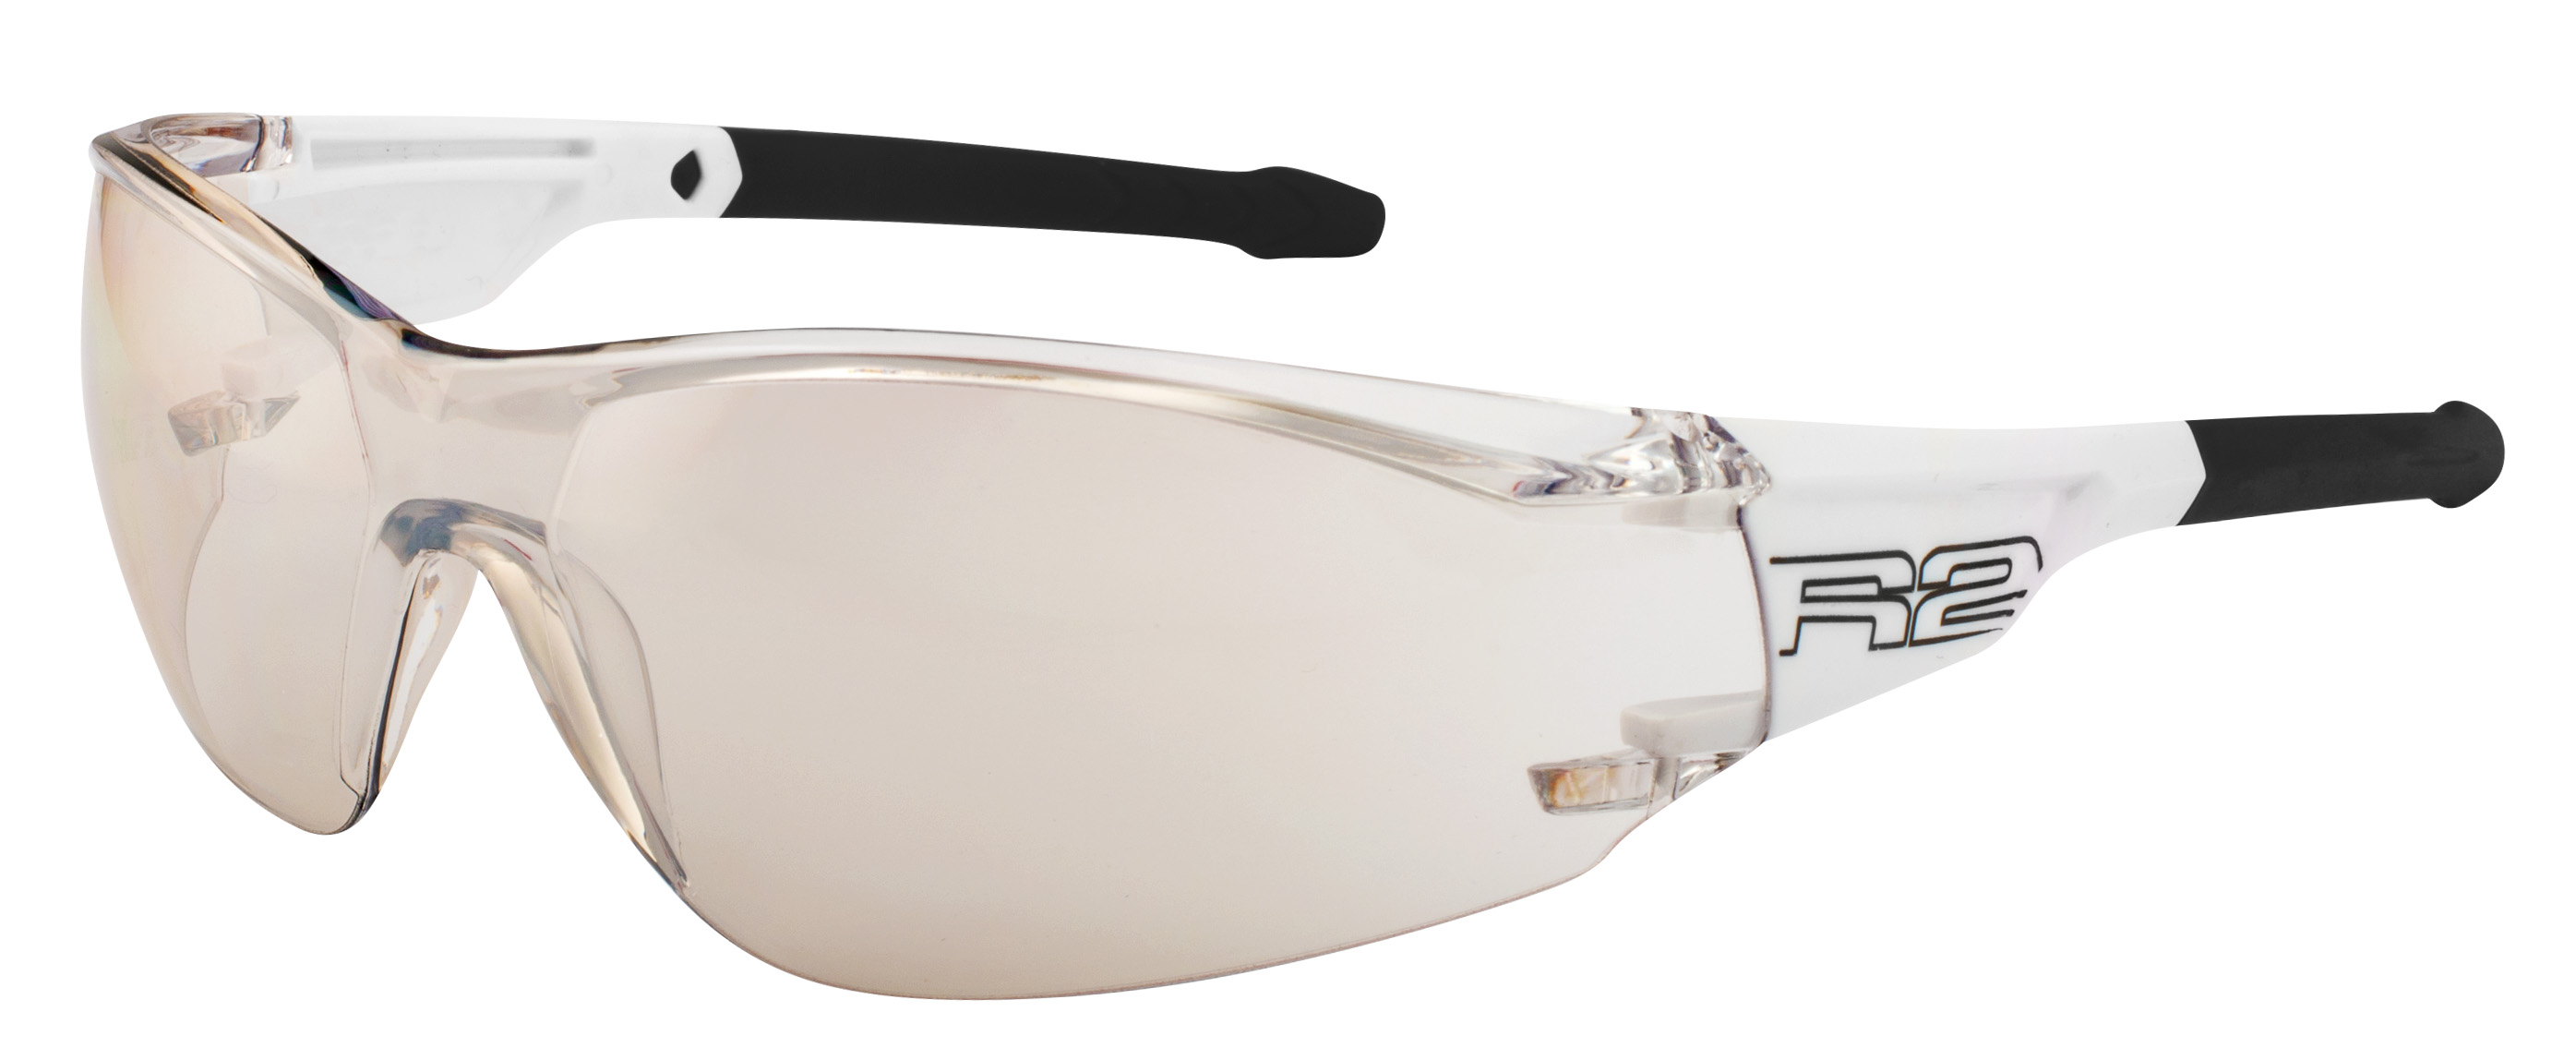 Sport sunglasses R2 ALLIGATOR2 AT112B standard